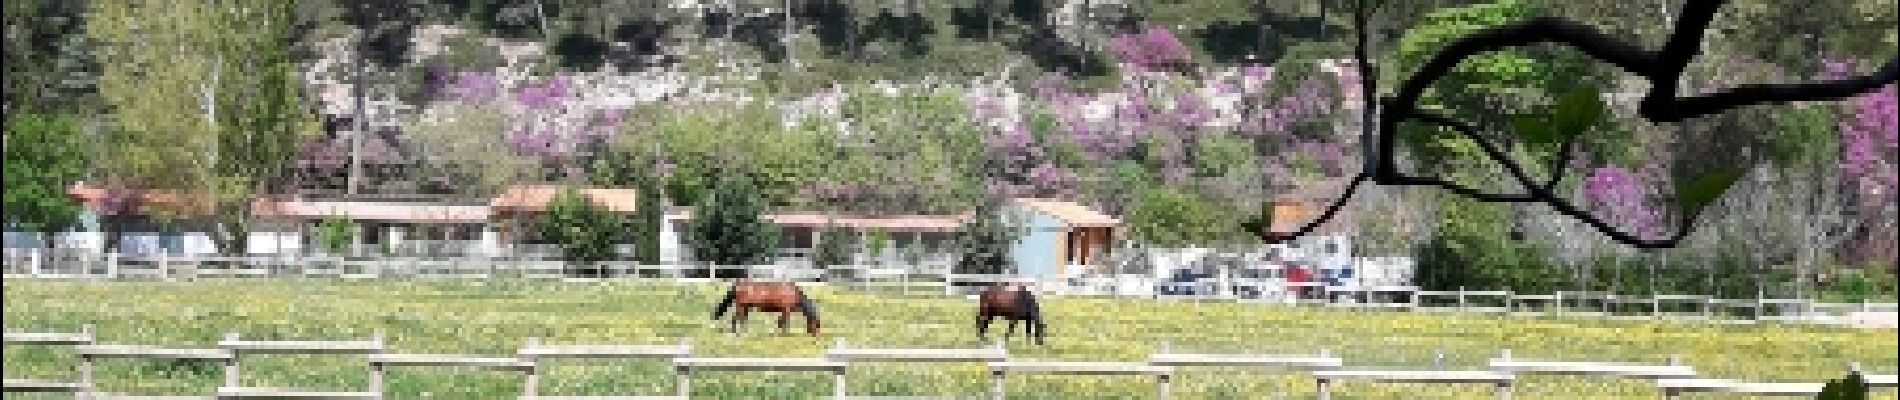 Point d'intérêt Gémenos - les chevaux des garde du parc - Photo